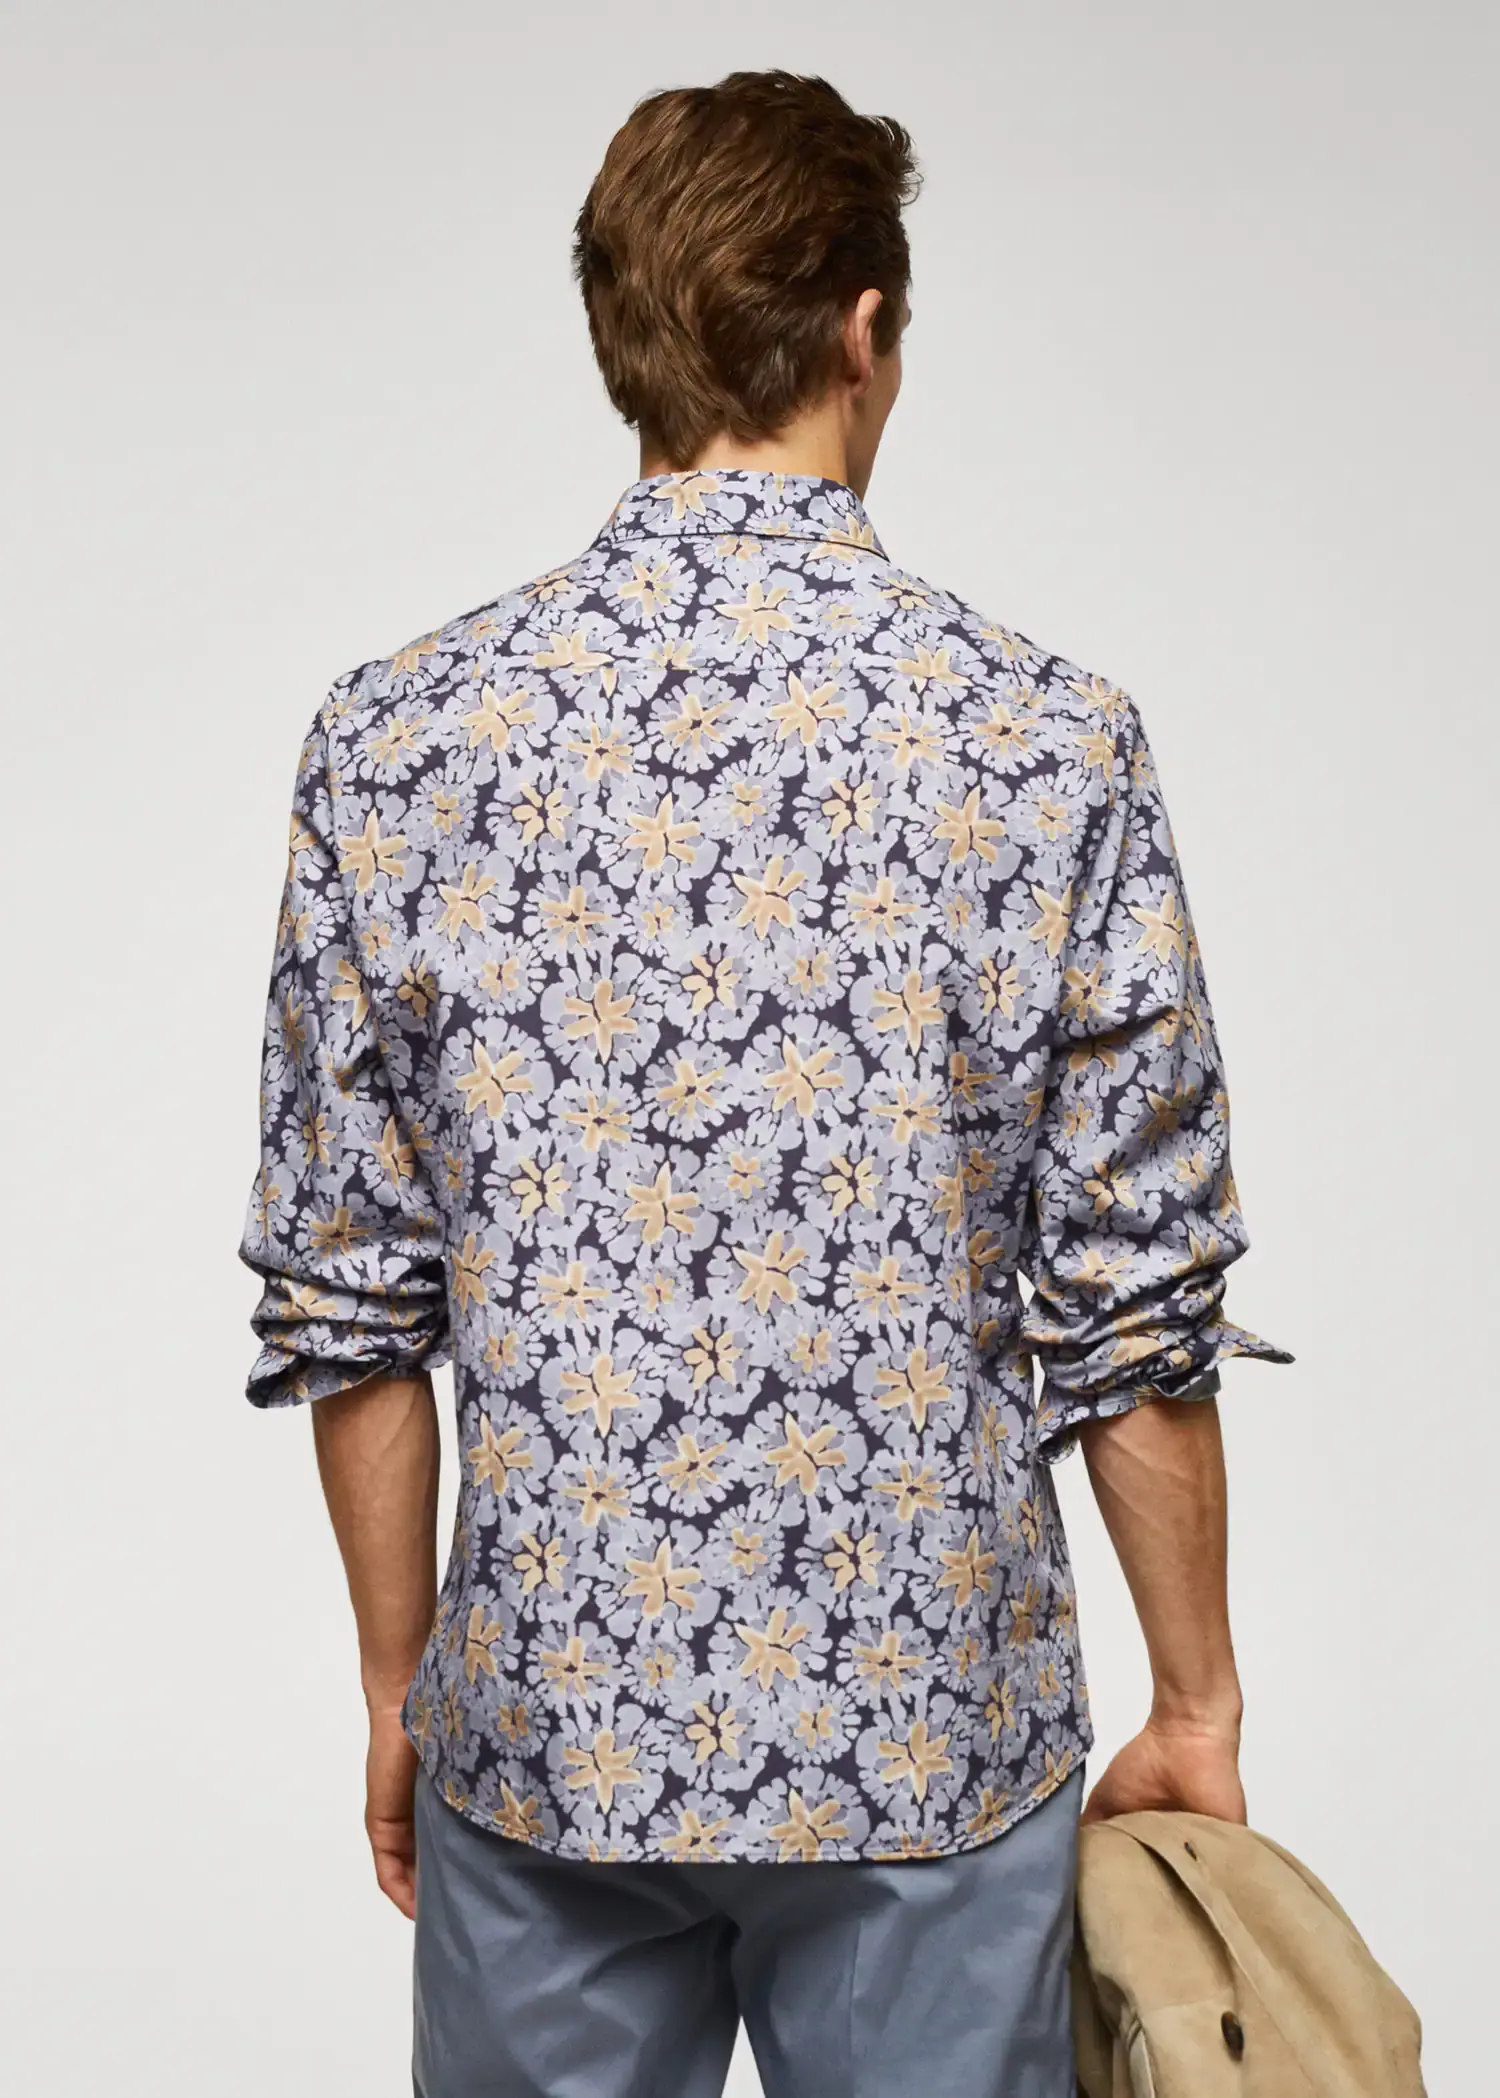 Mango 100% cotton regular-fit printed shirt. 3